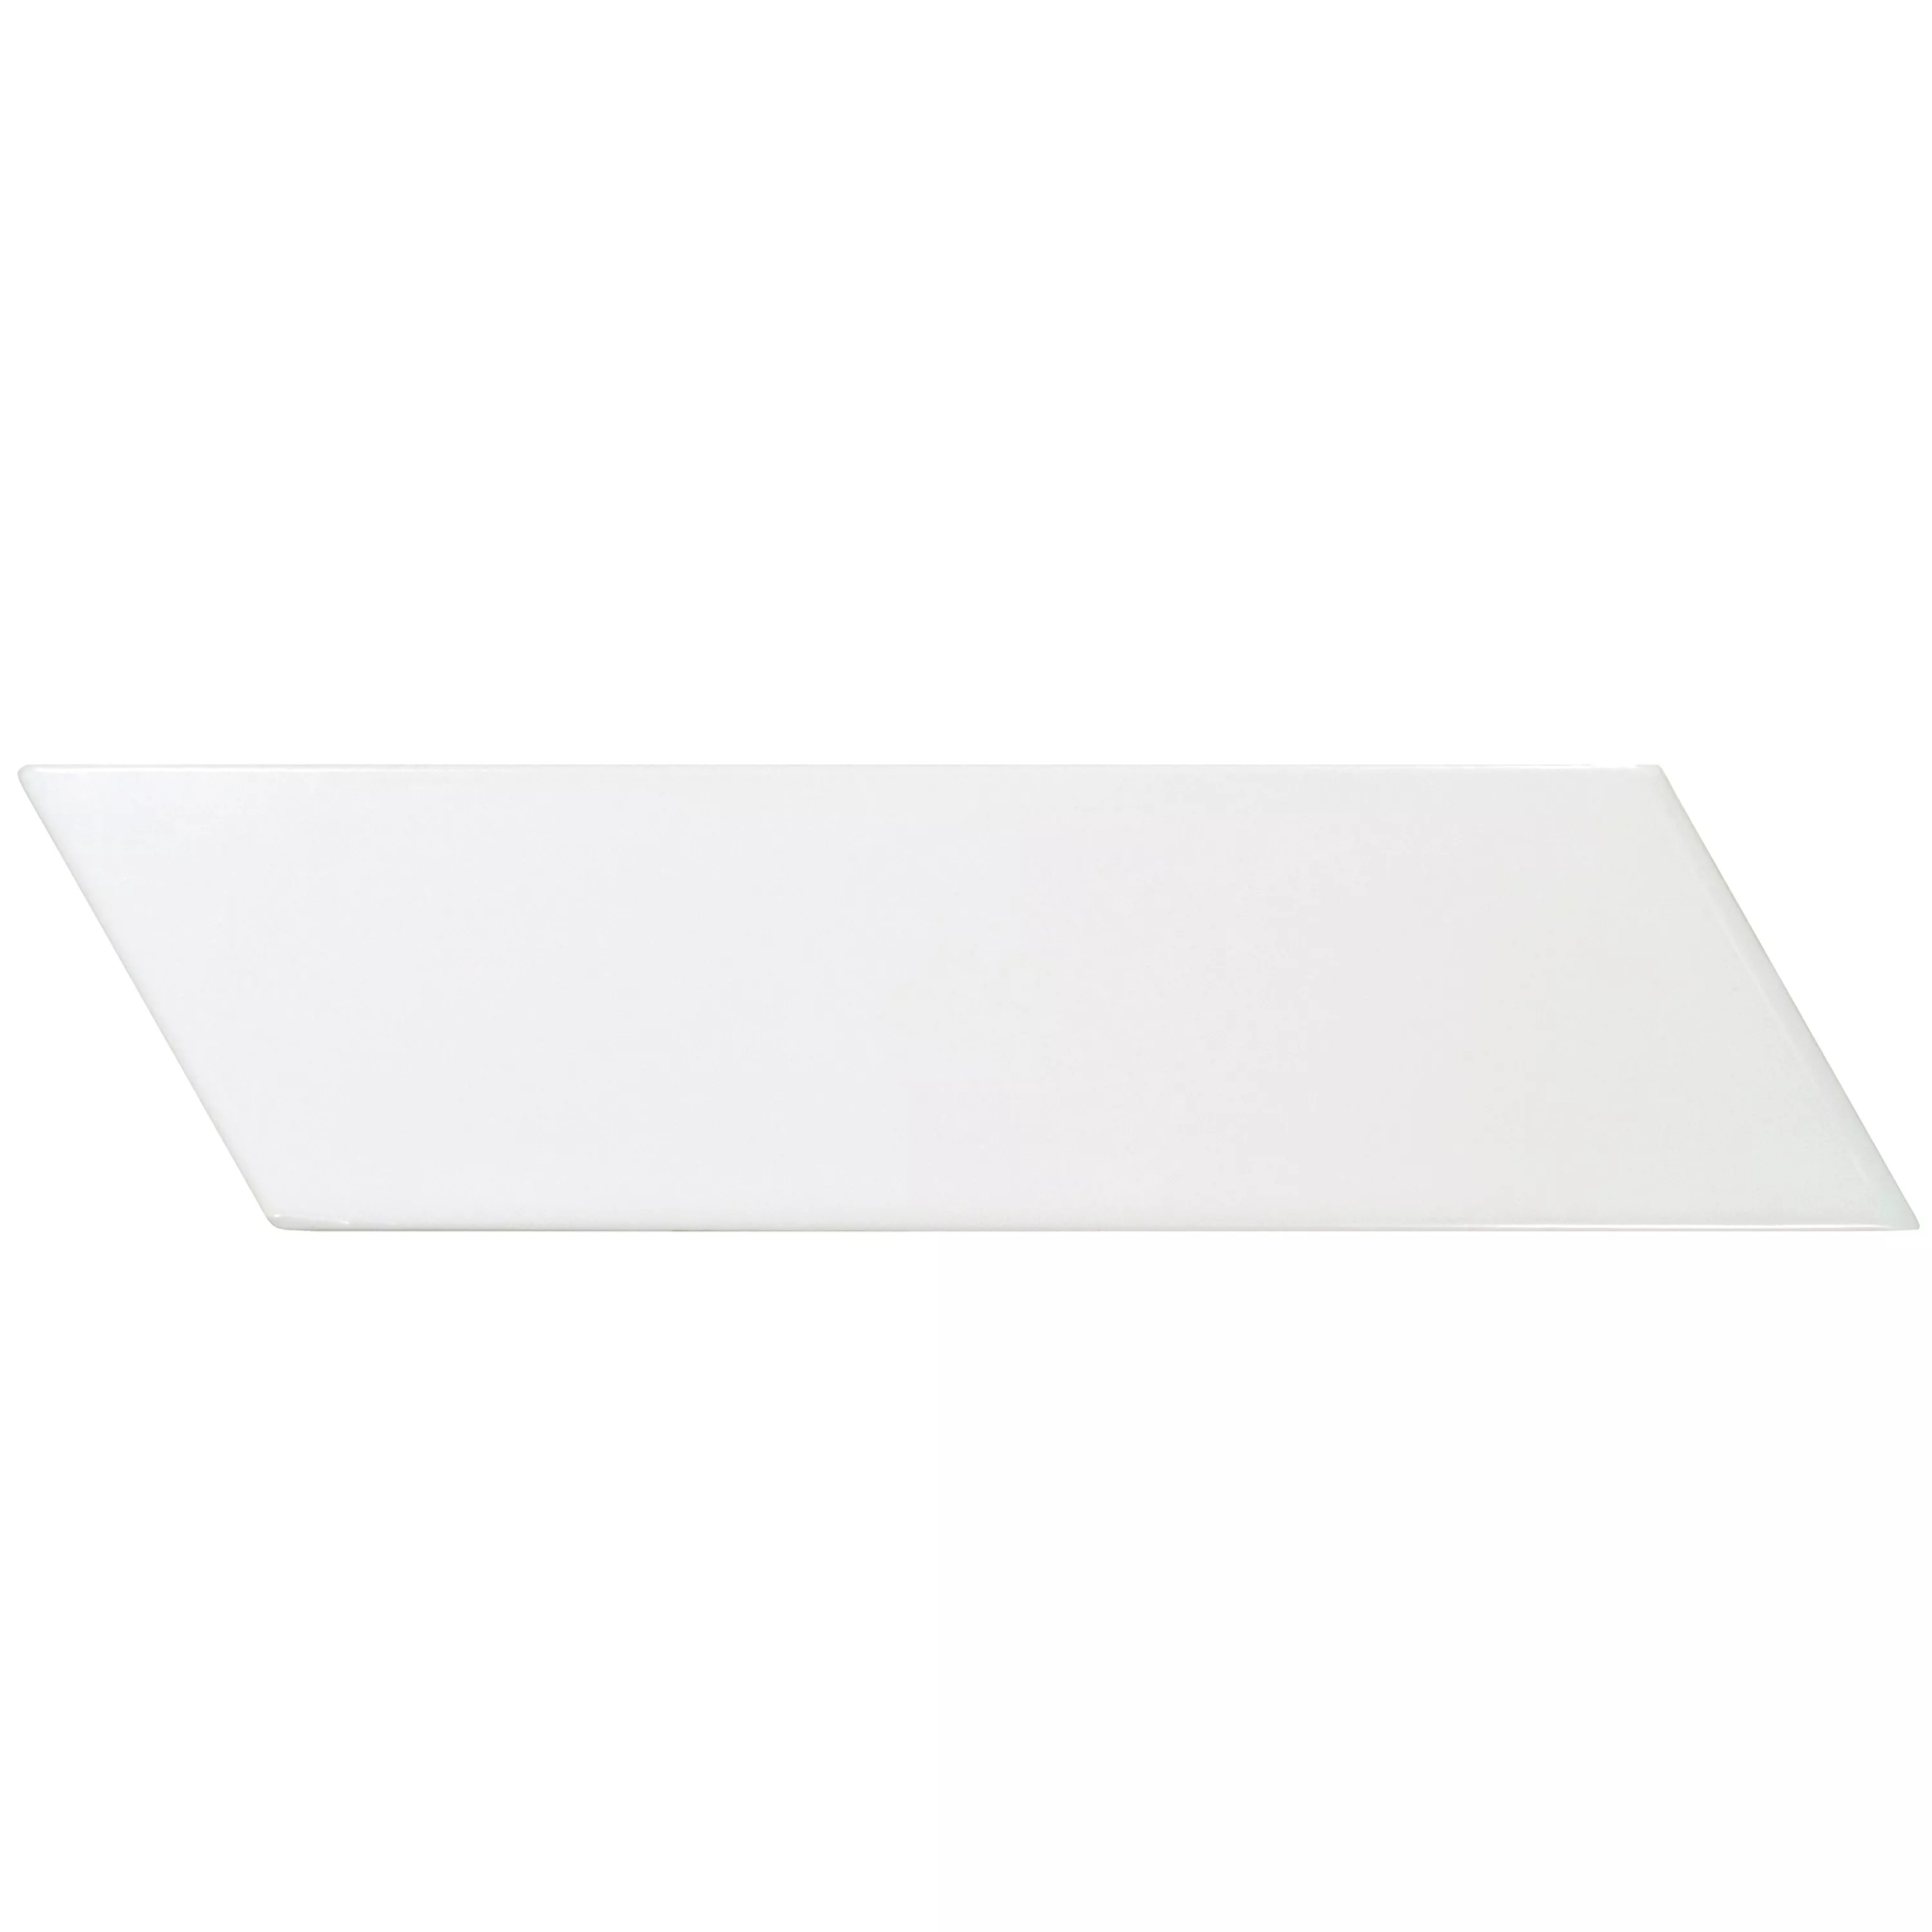 Campione Rivestimenti Silex 18,6x5,2cm Bianco In Diagonale Destra